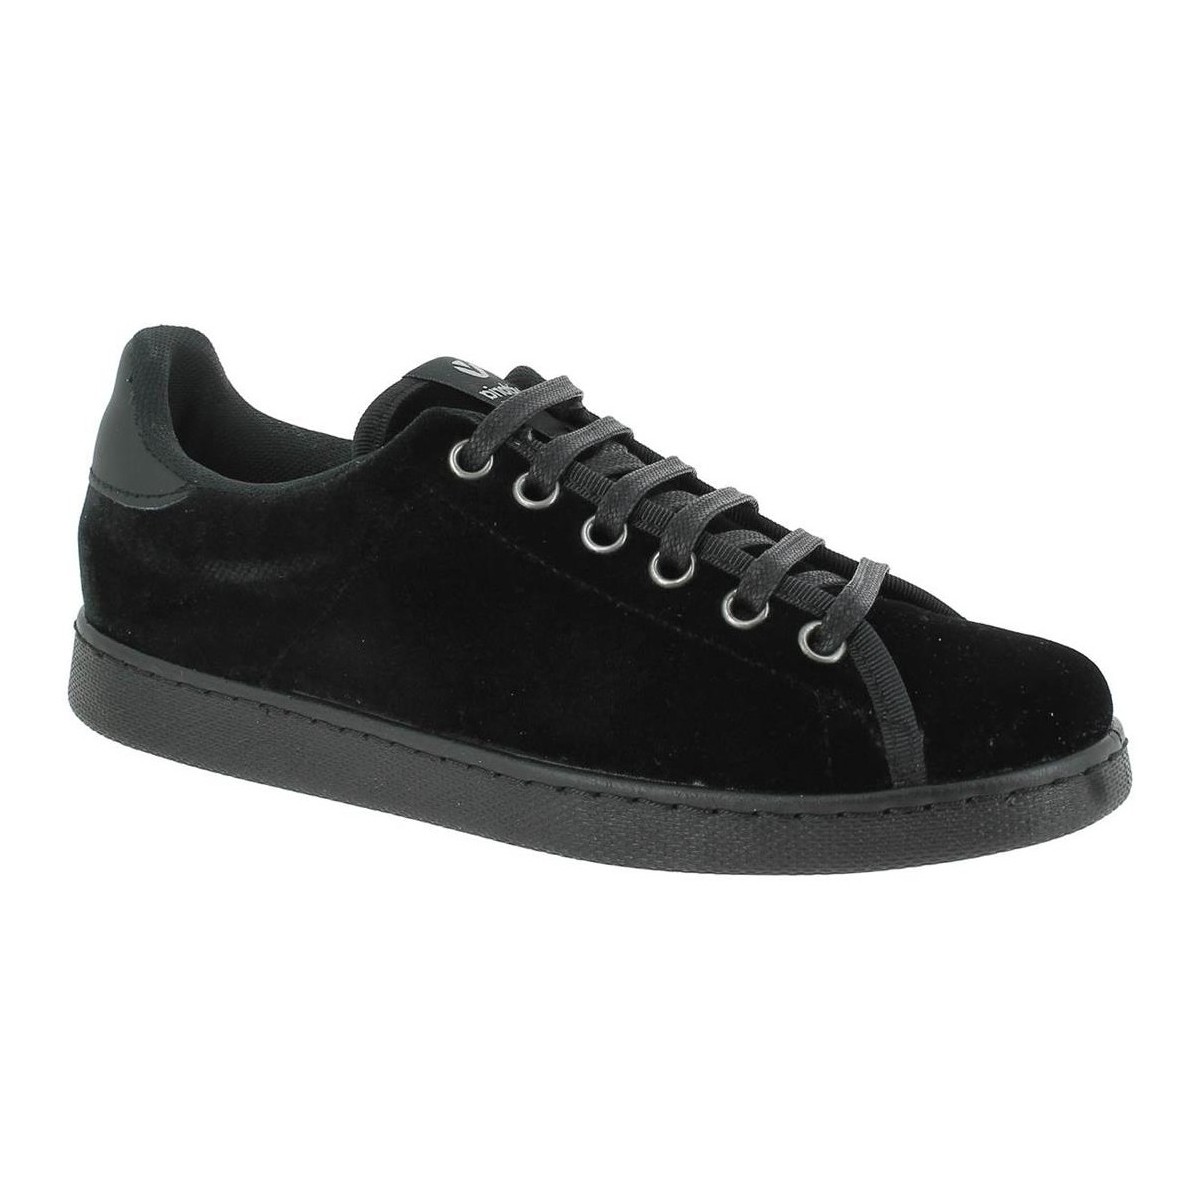 Παπούτσια Γυναίκα Sneakers Victoria 125137 Black